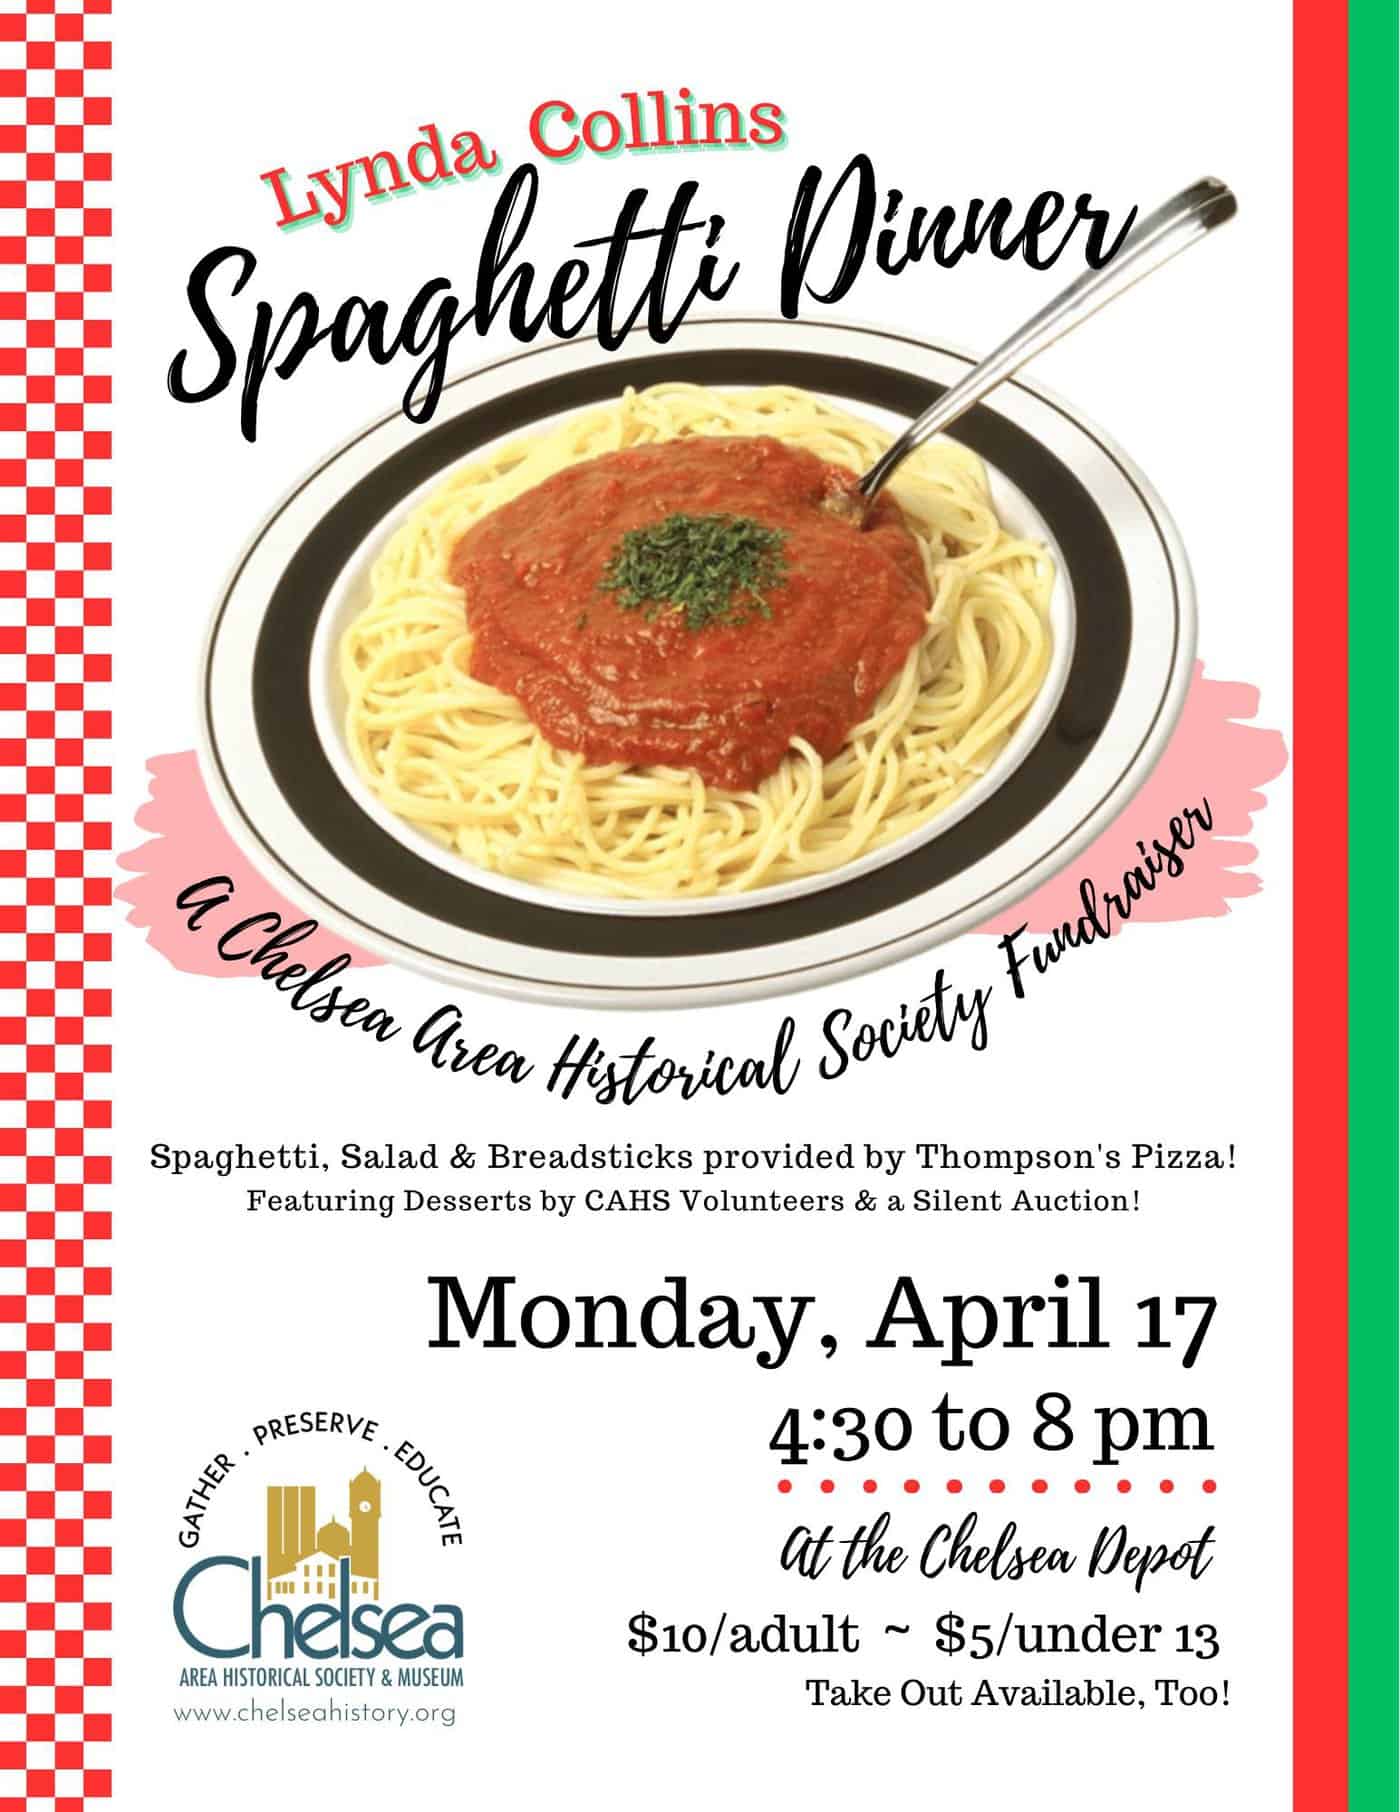 spaghetti dinner fundraiser